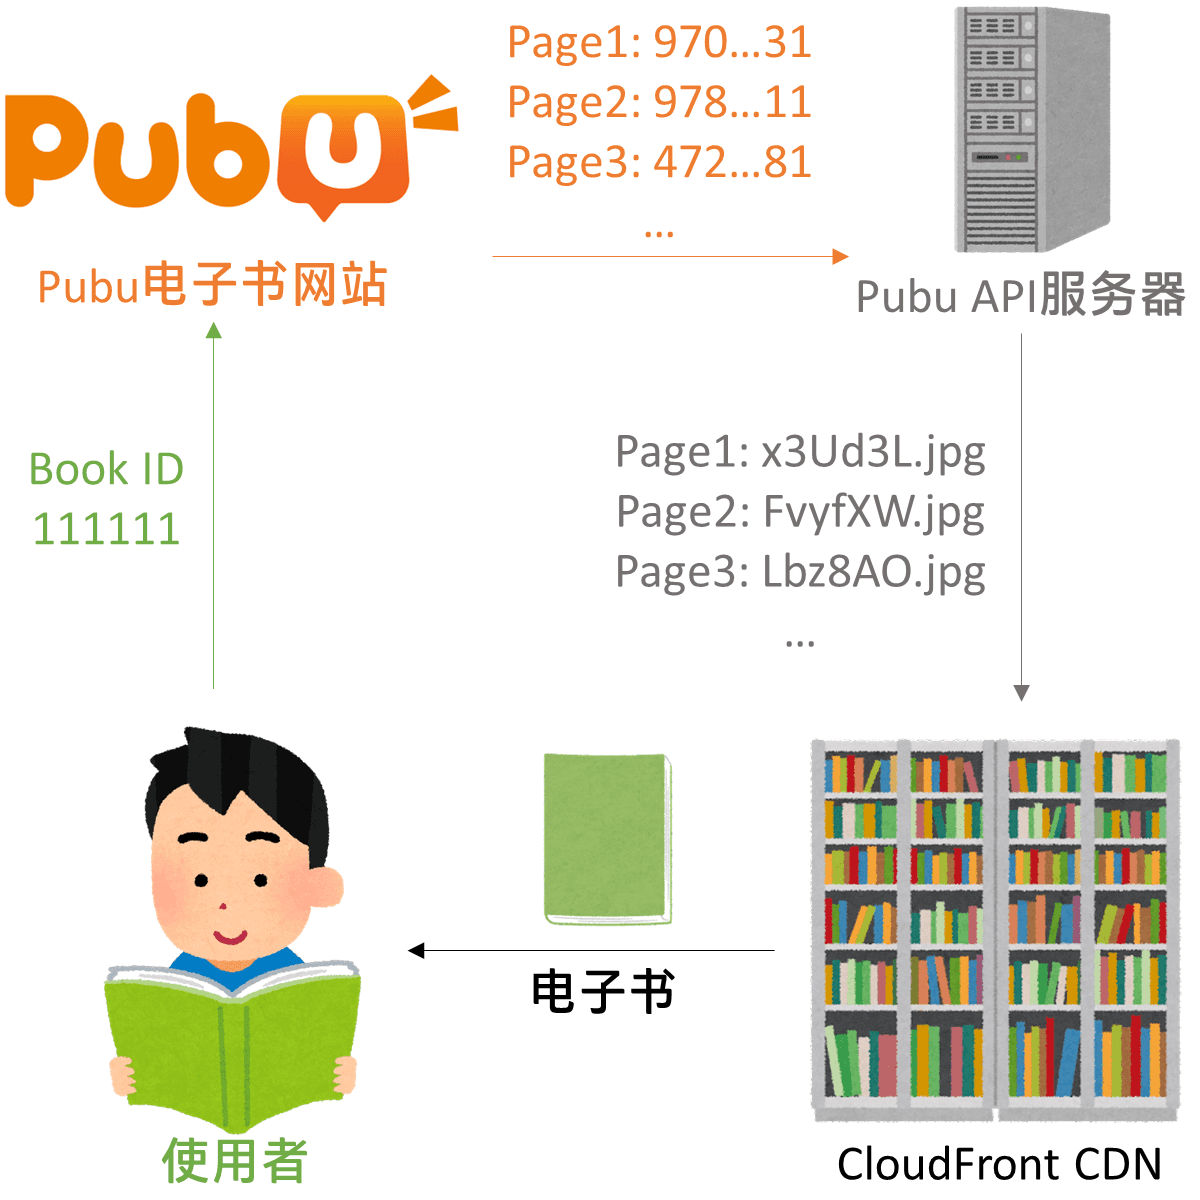 在Pubu网站上阅读电子书的流程。